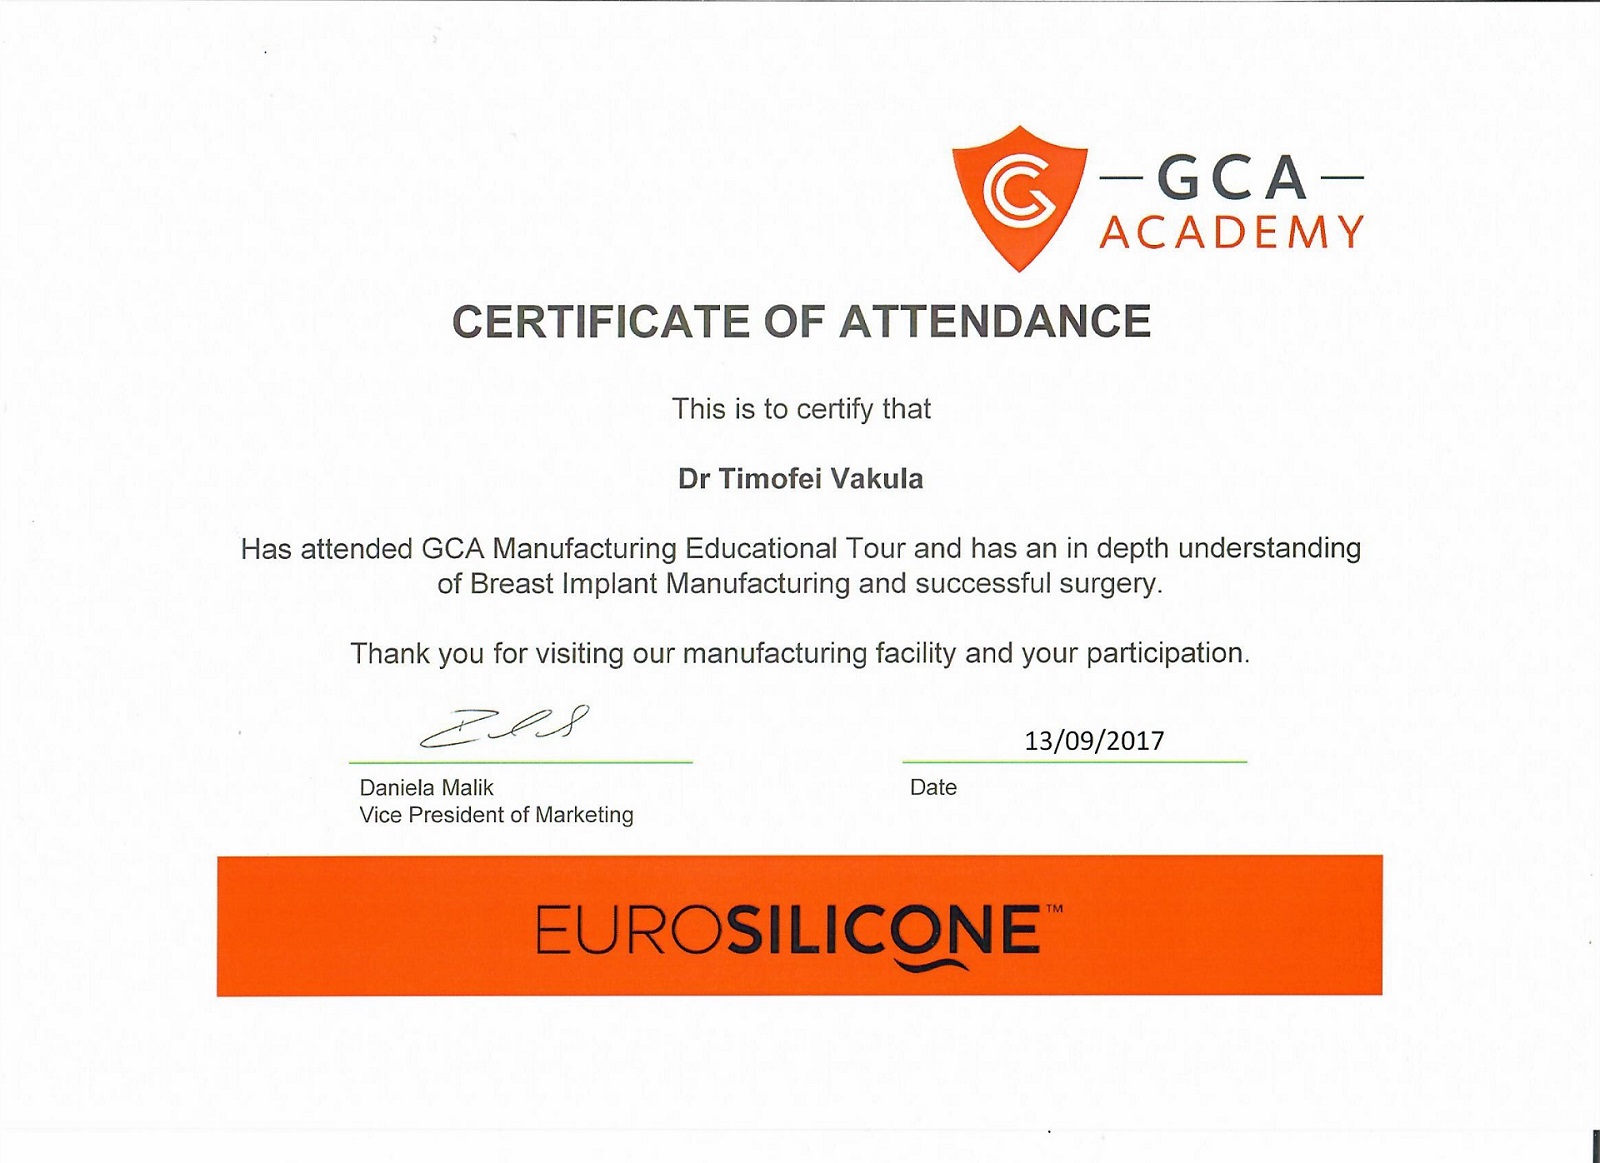 Сертификат от GCA Academy, 2017 год